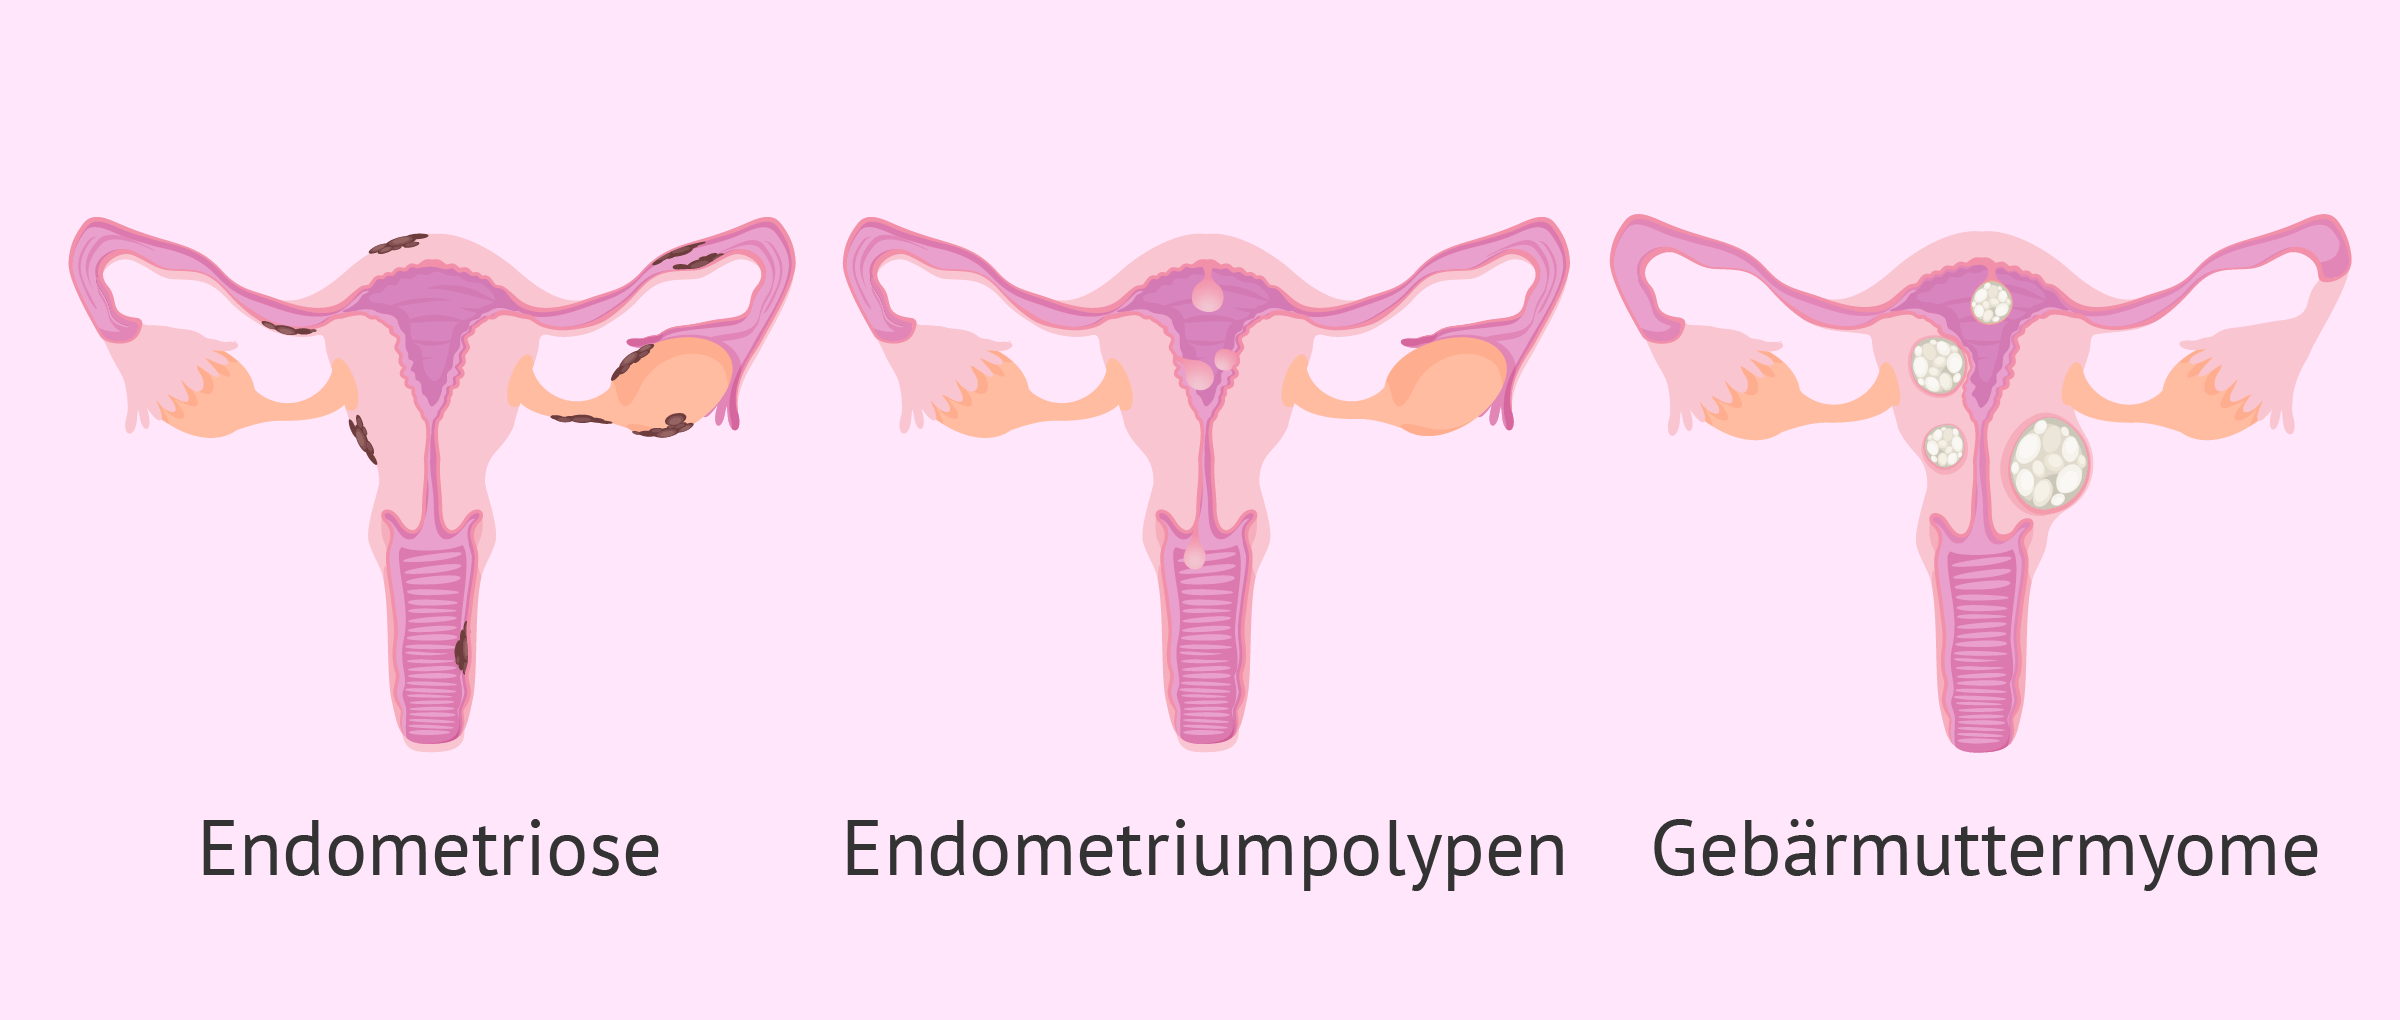 Krankheiten die das Endometrium beeinträchtigen